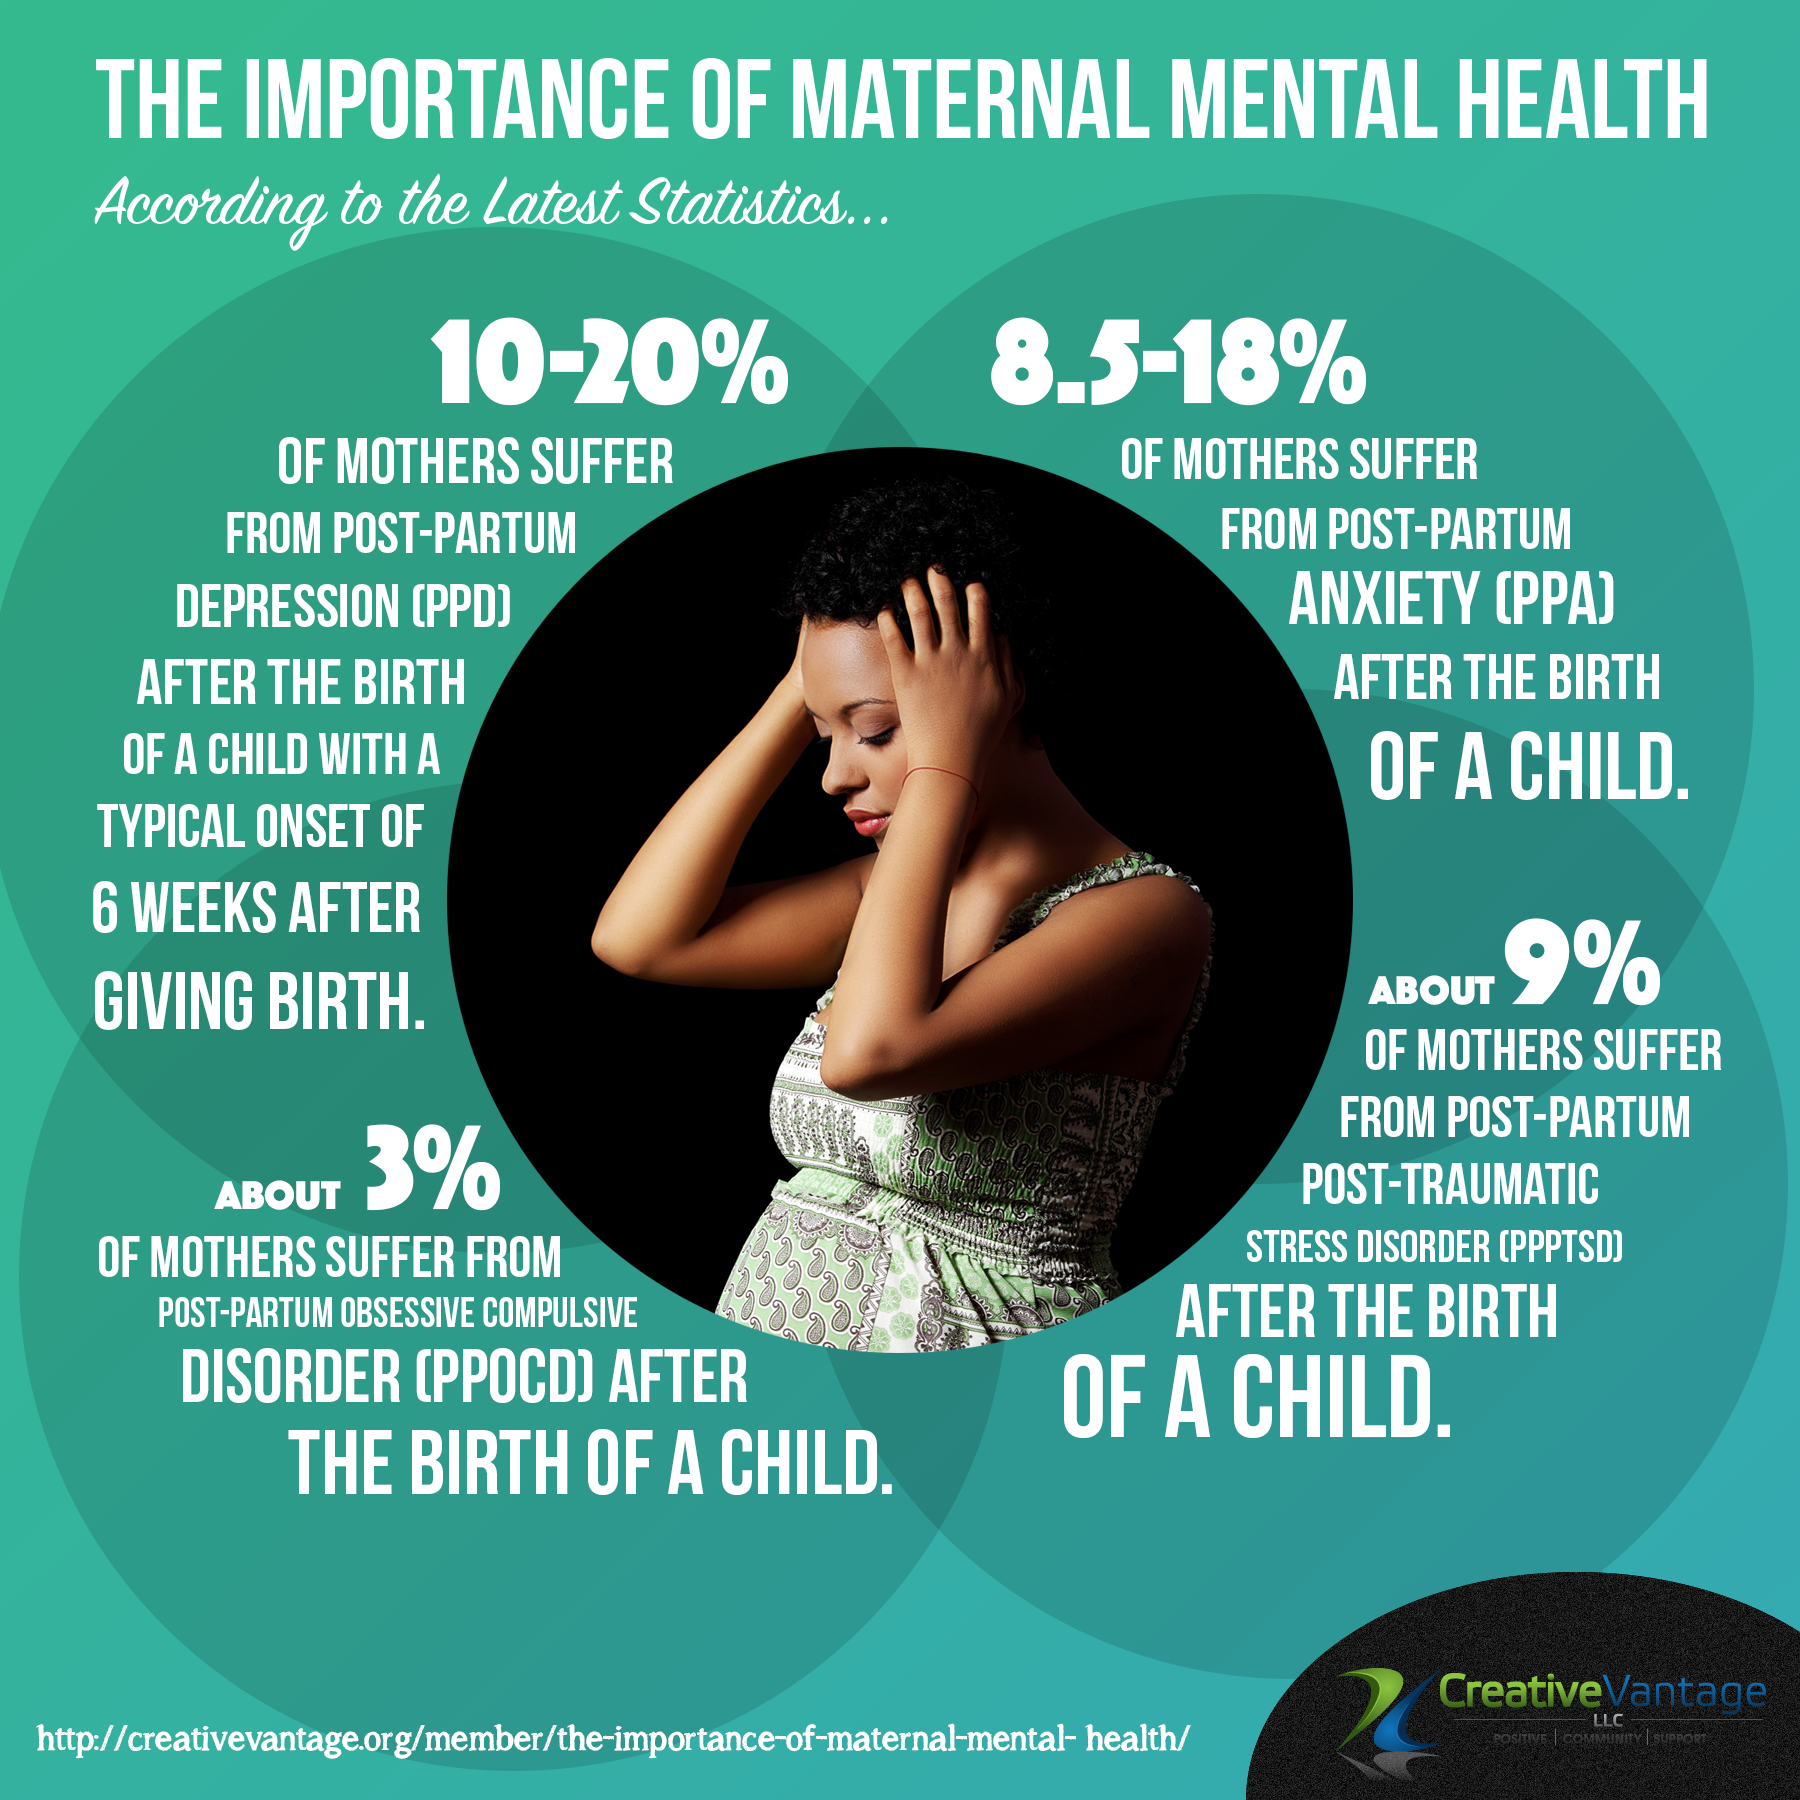 Maternal Mental Health Alliance on Twitter: 